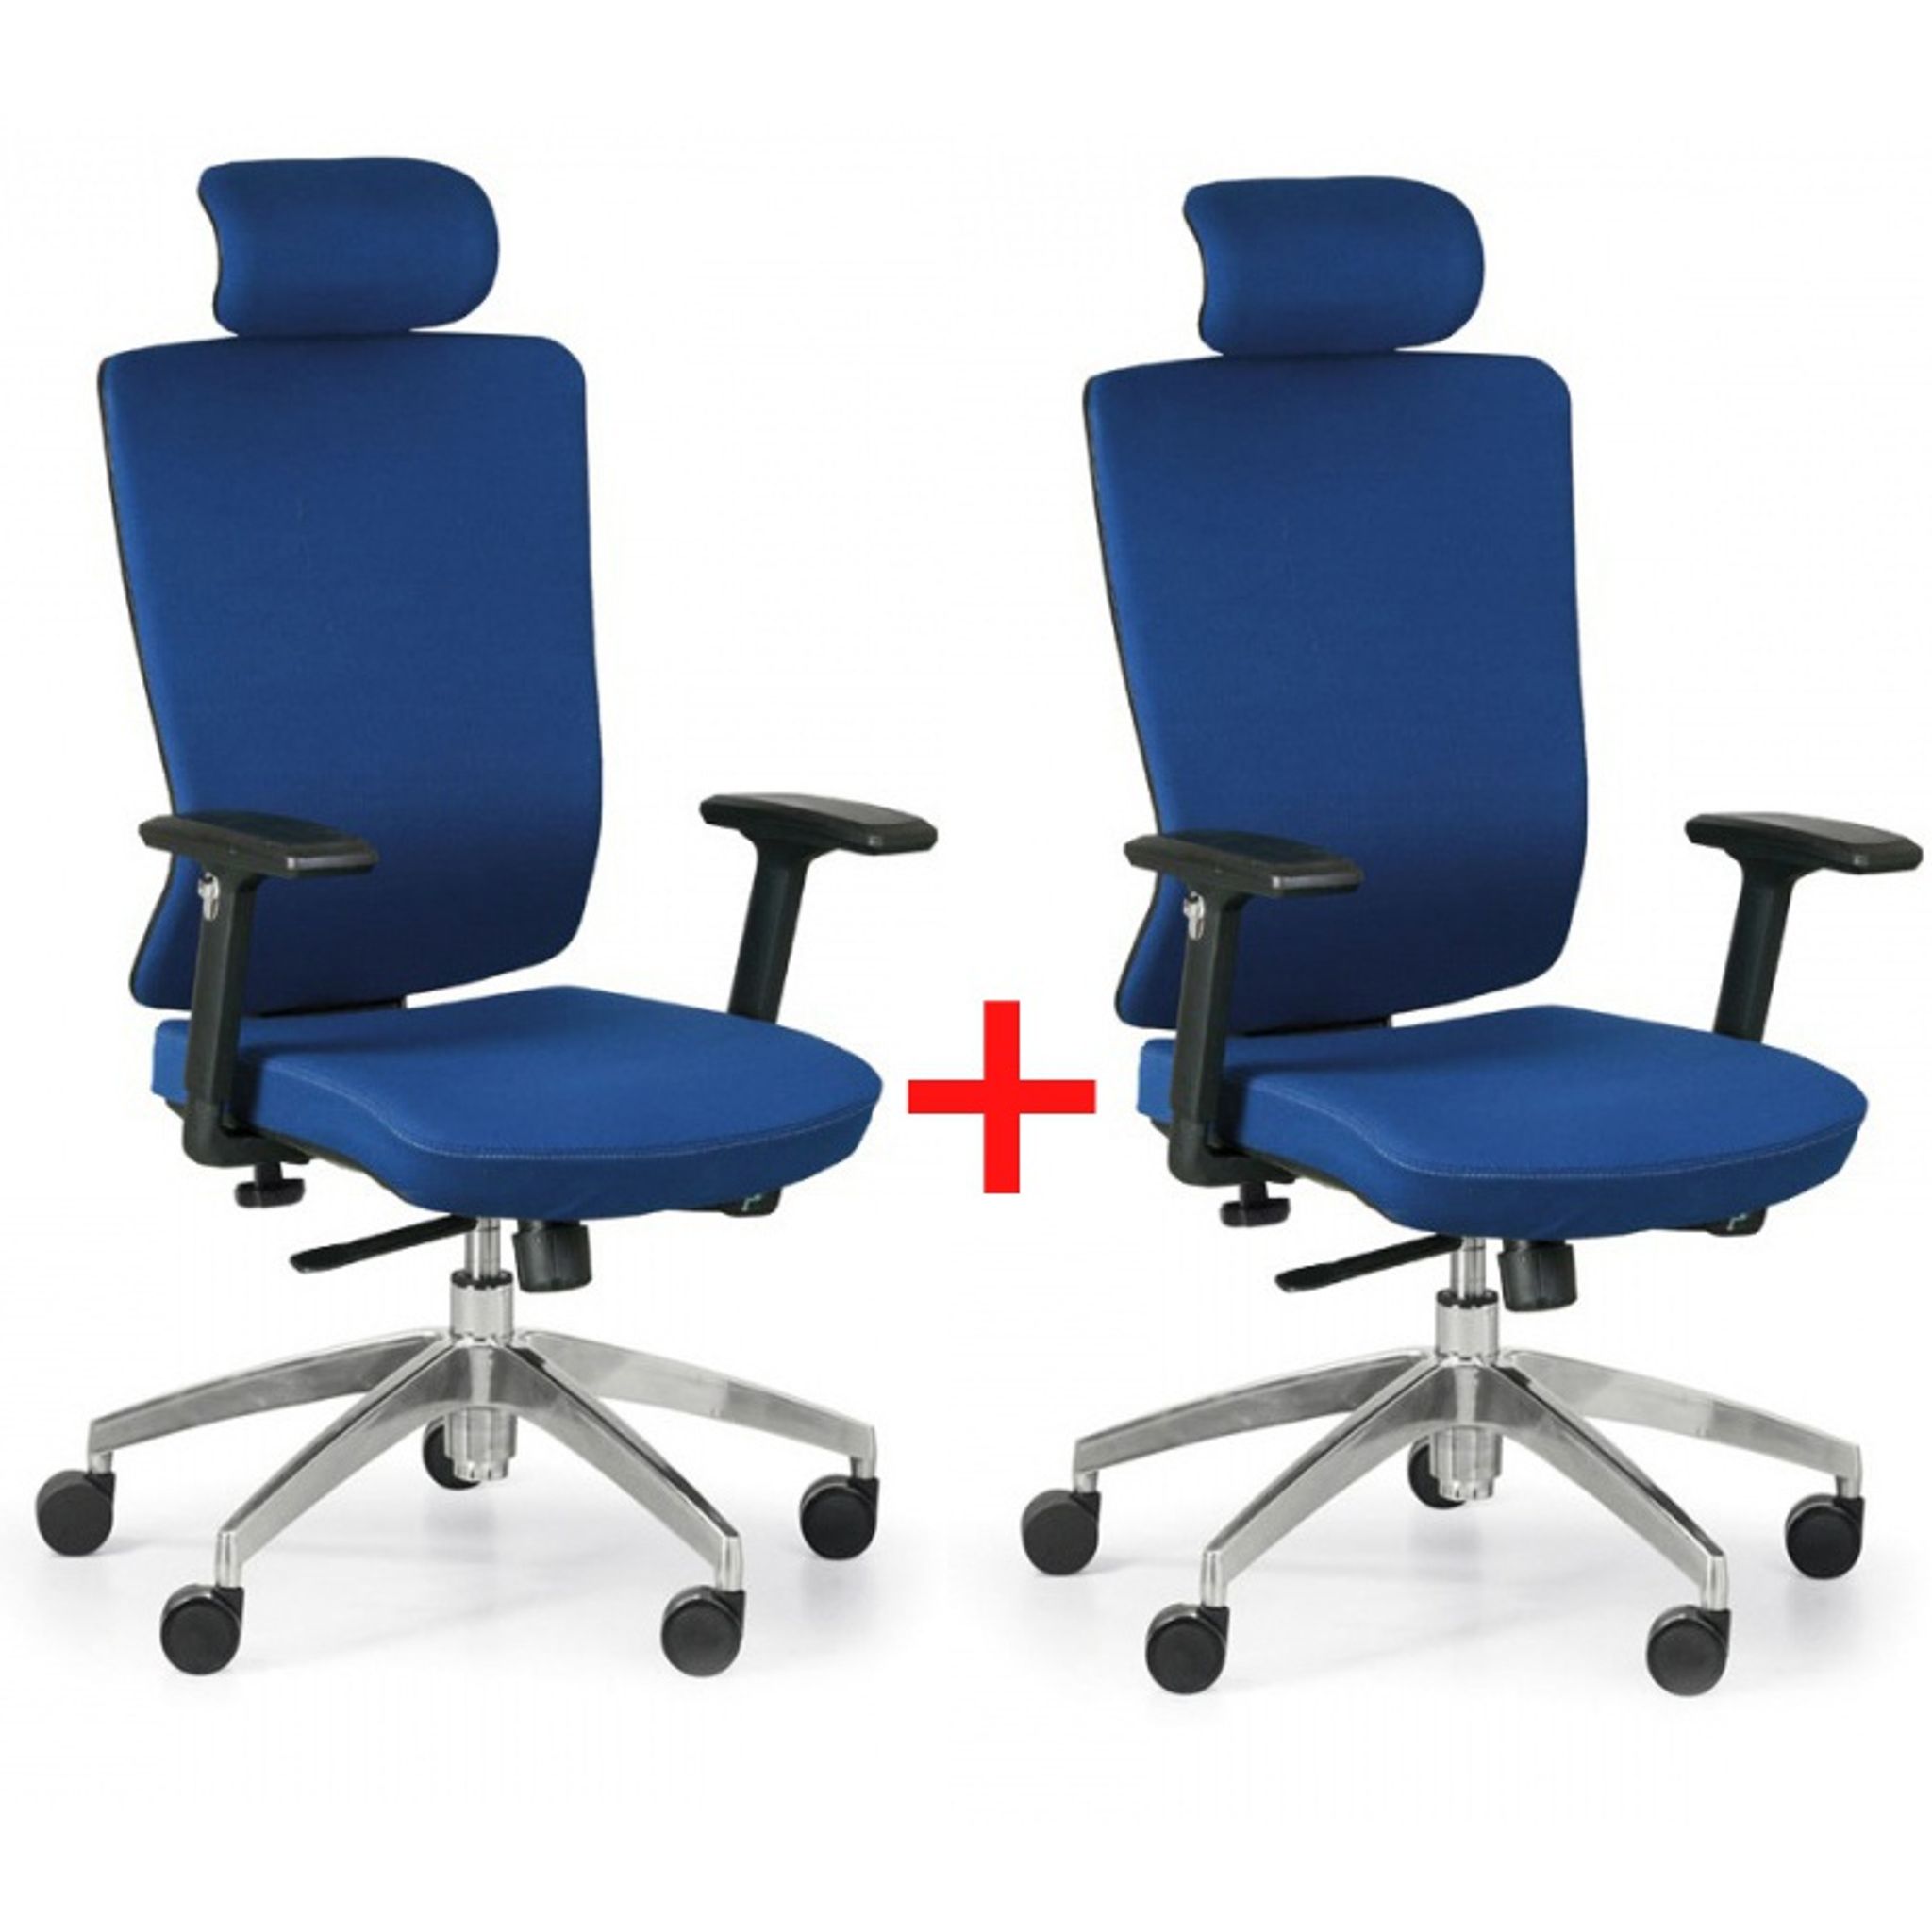 Krzesło biurowe NED F 1+1 GRATIS